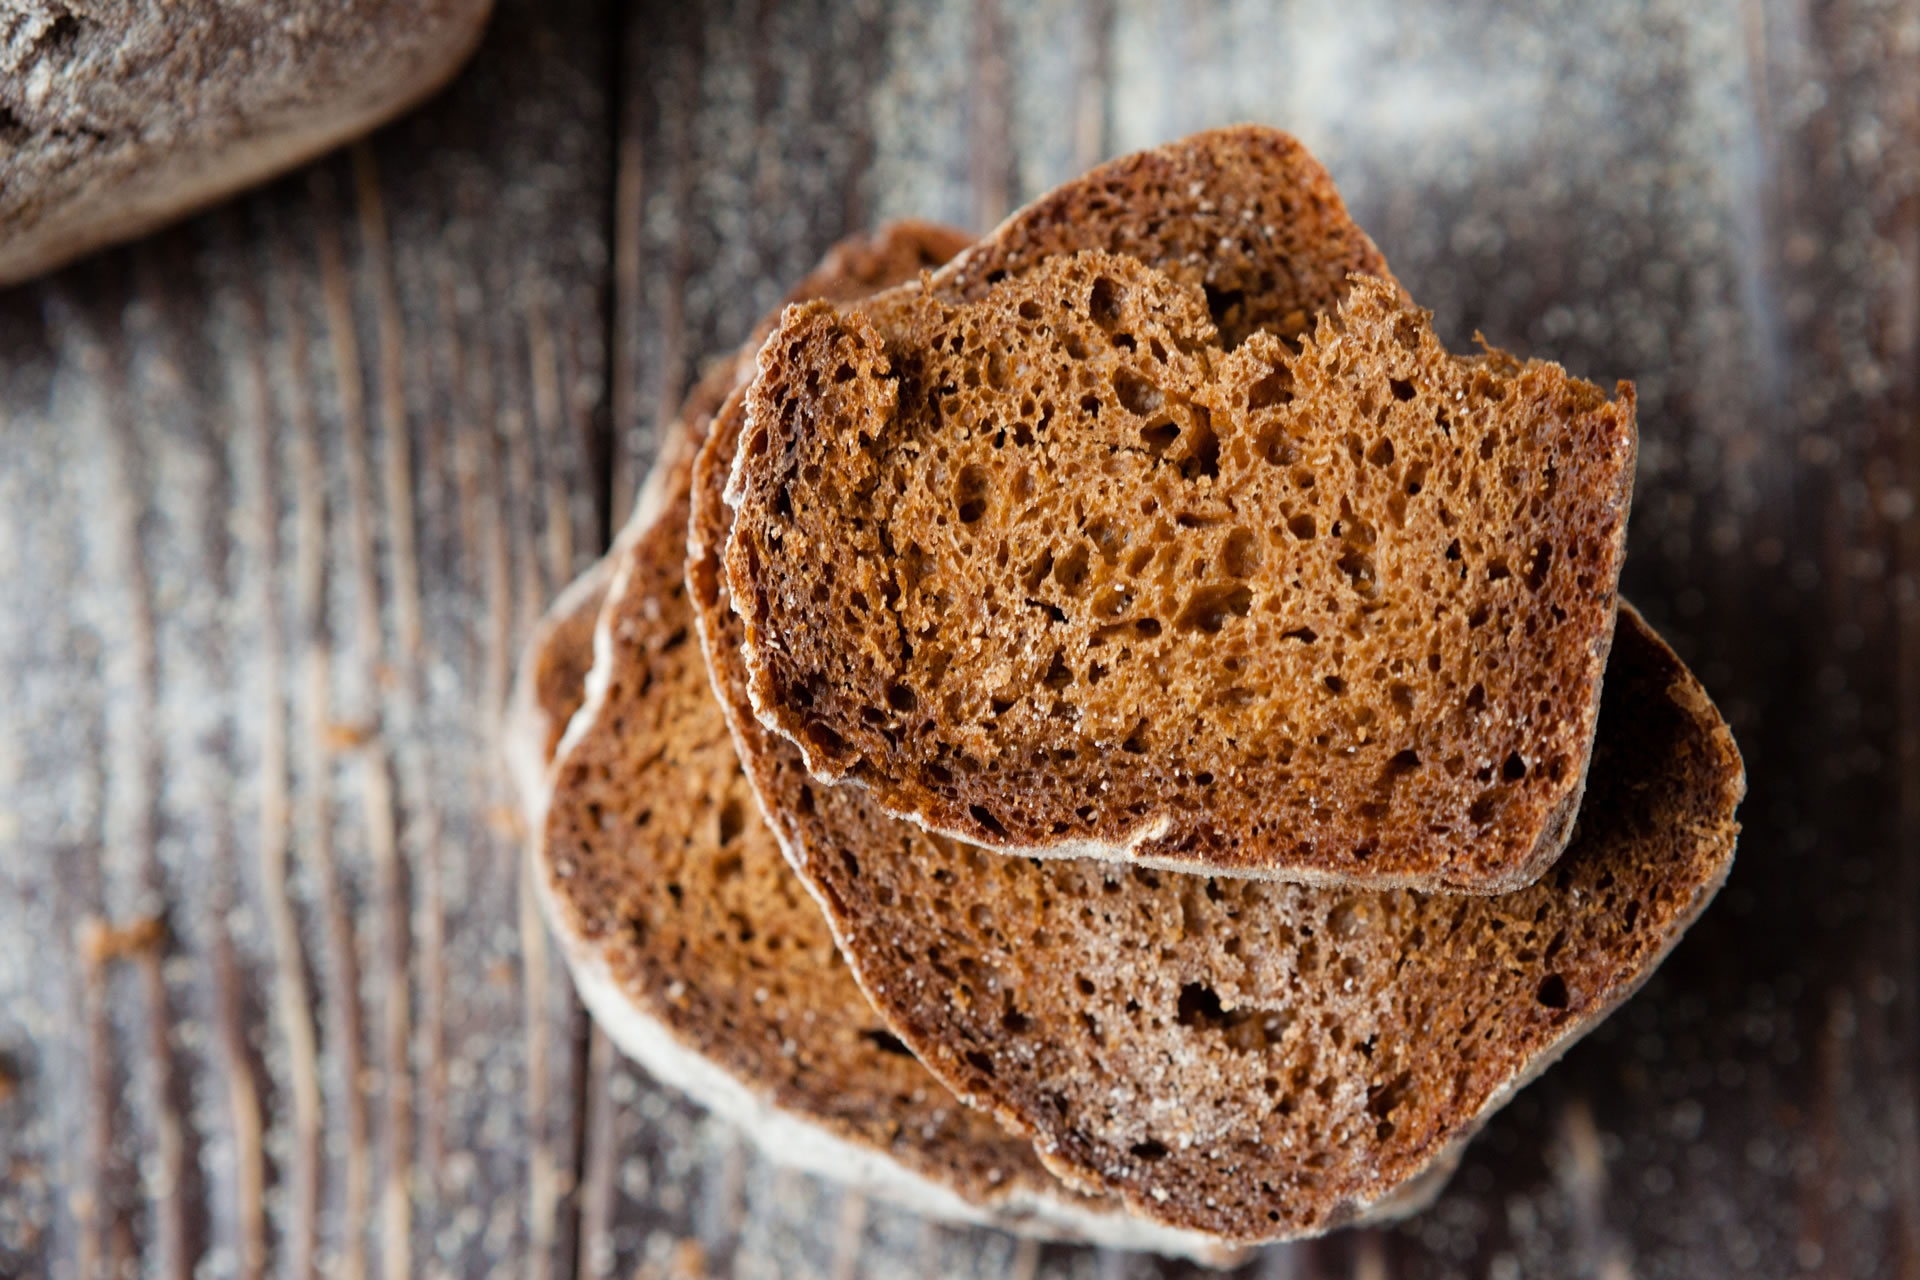 Traditionelles Brot und feine Backwaren seit mehr als 100 Jahren / Quelle: Olha Afanasieva/Shutterstock.com